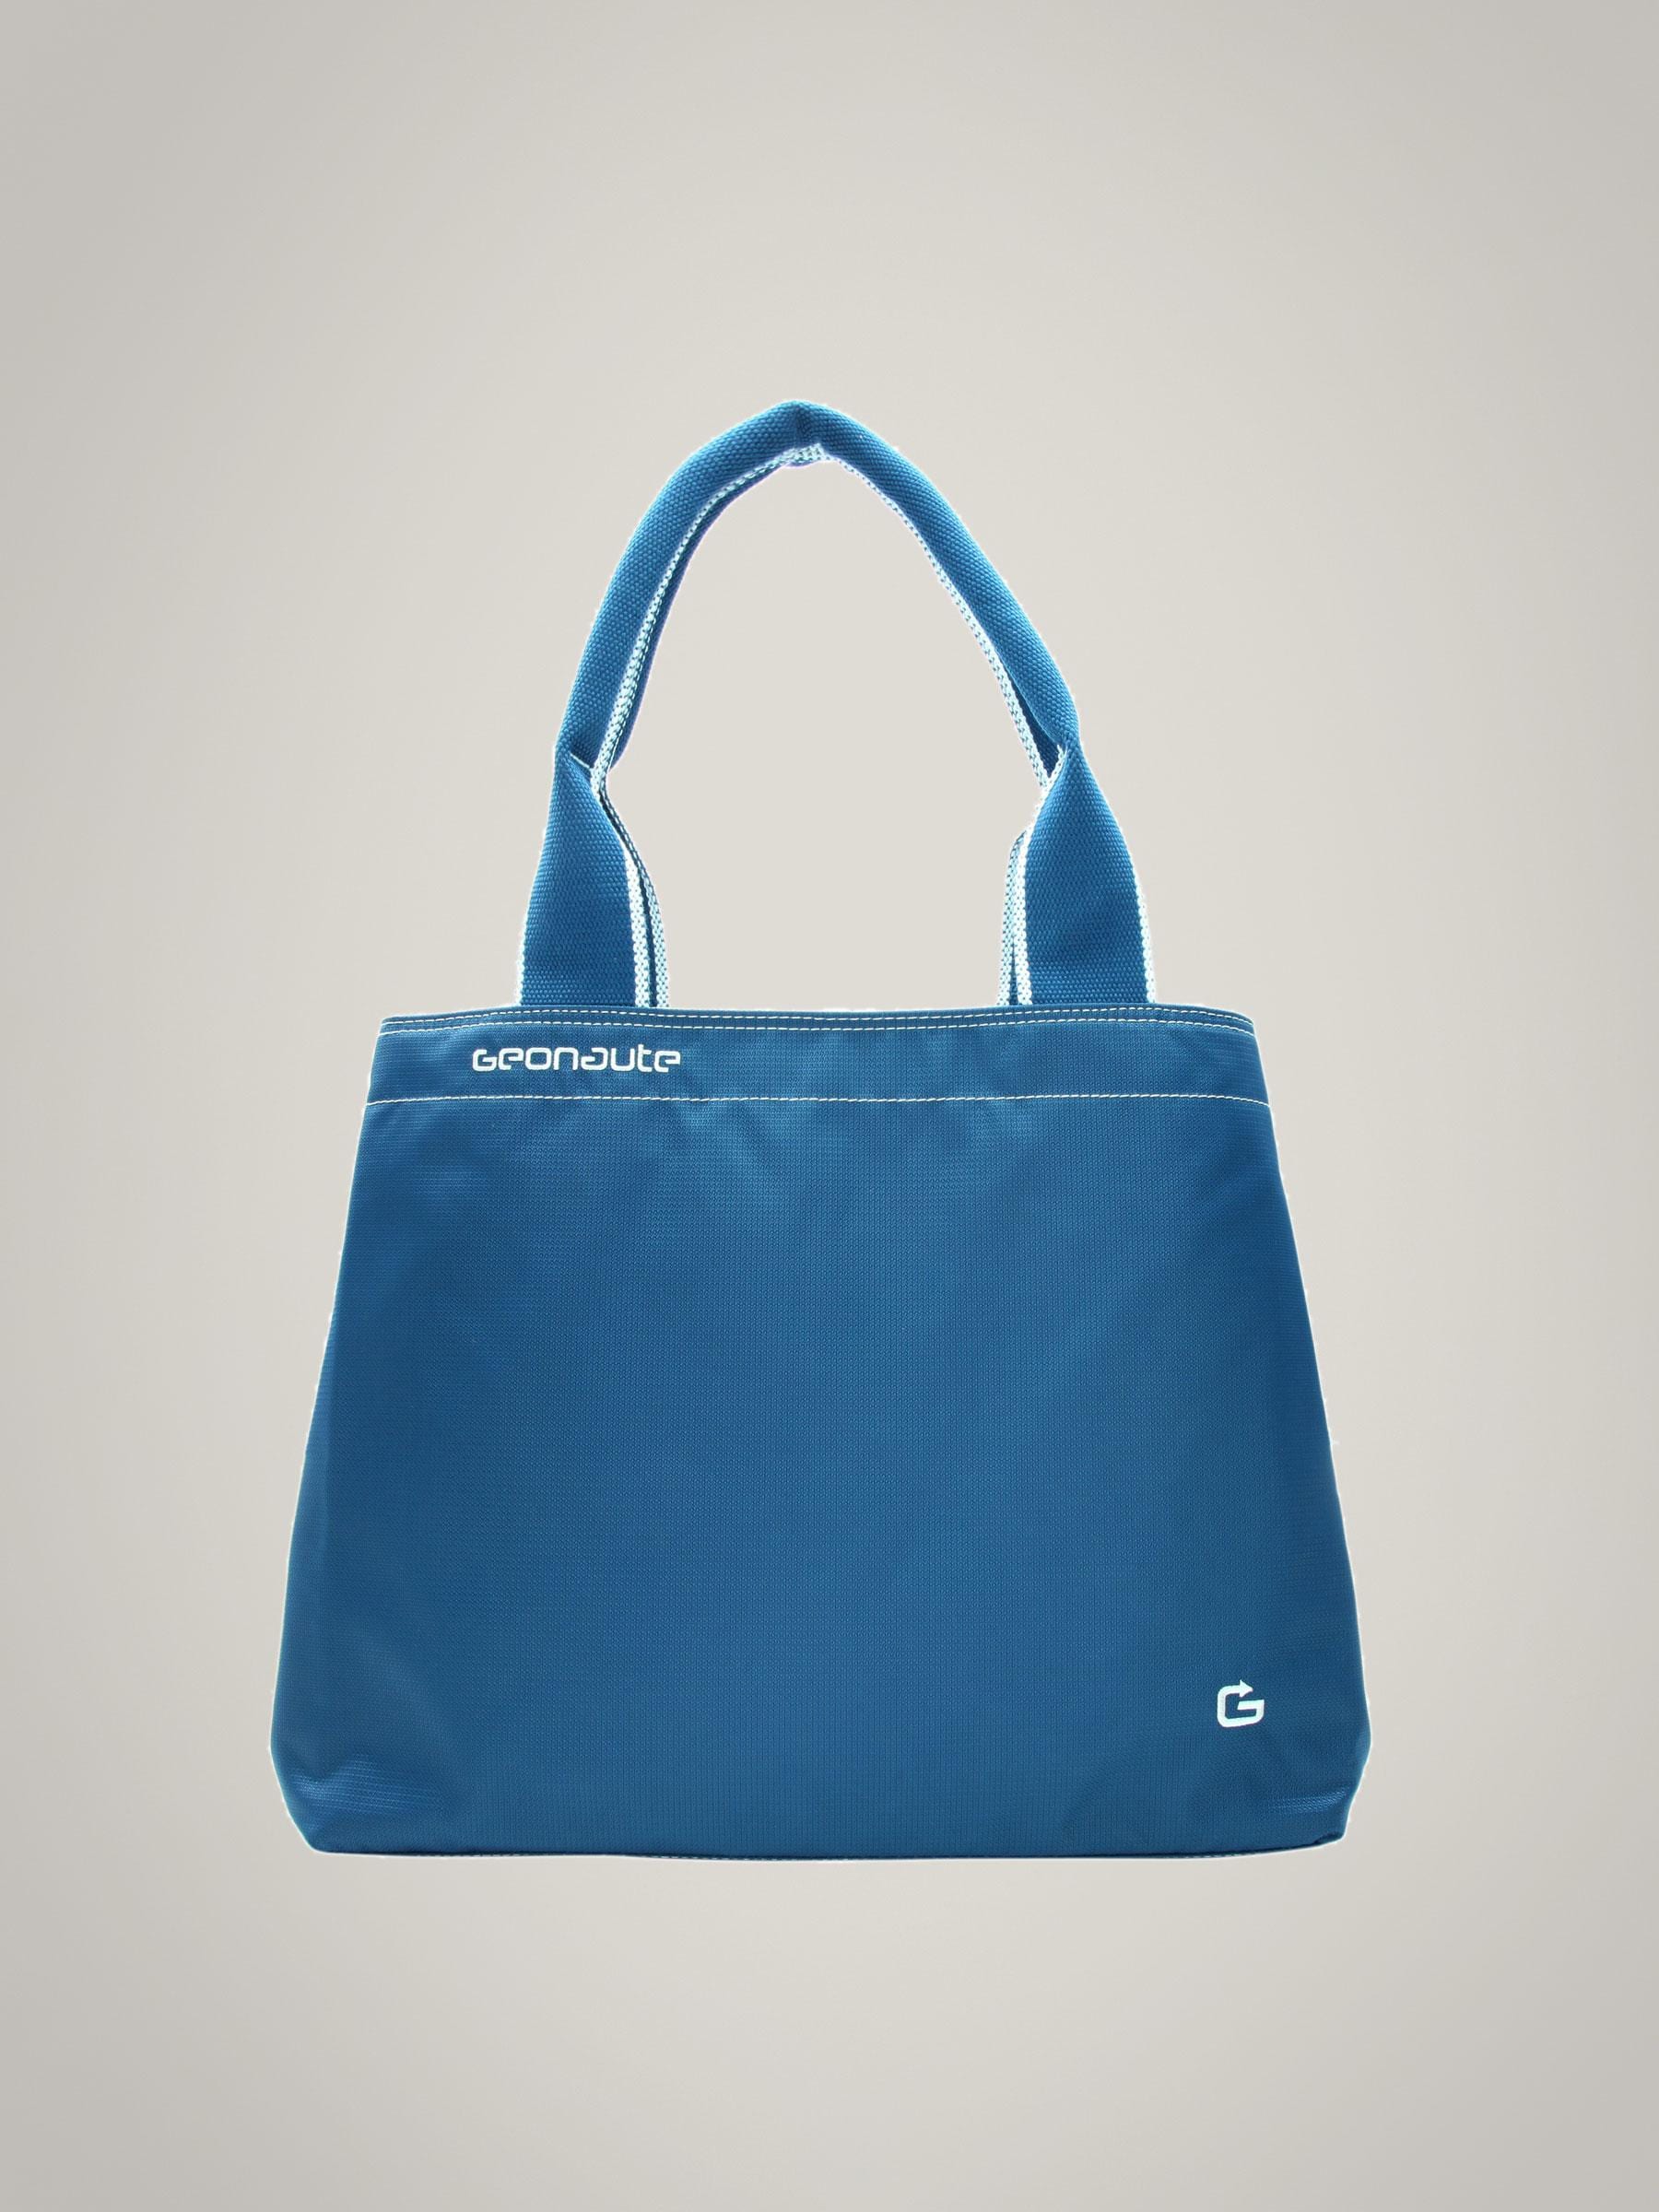 Geonaute Women Blue Outdoor Bag